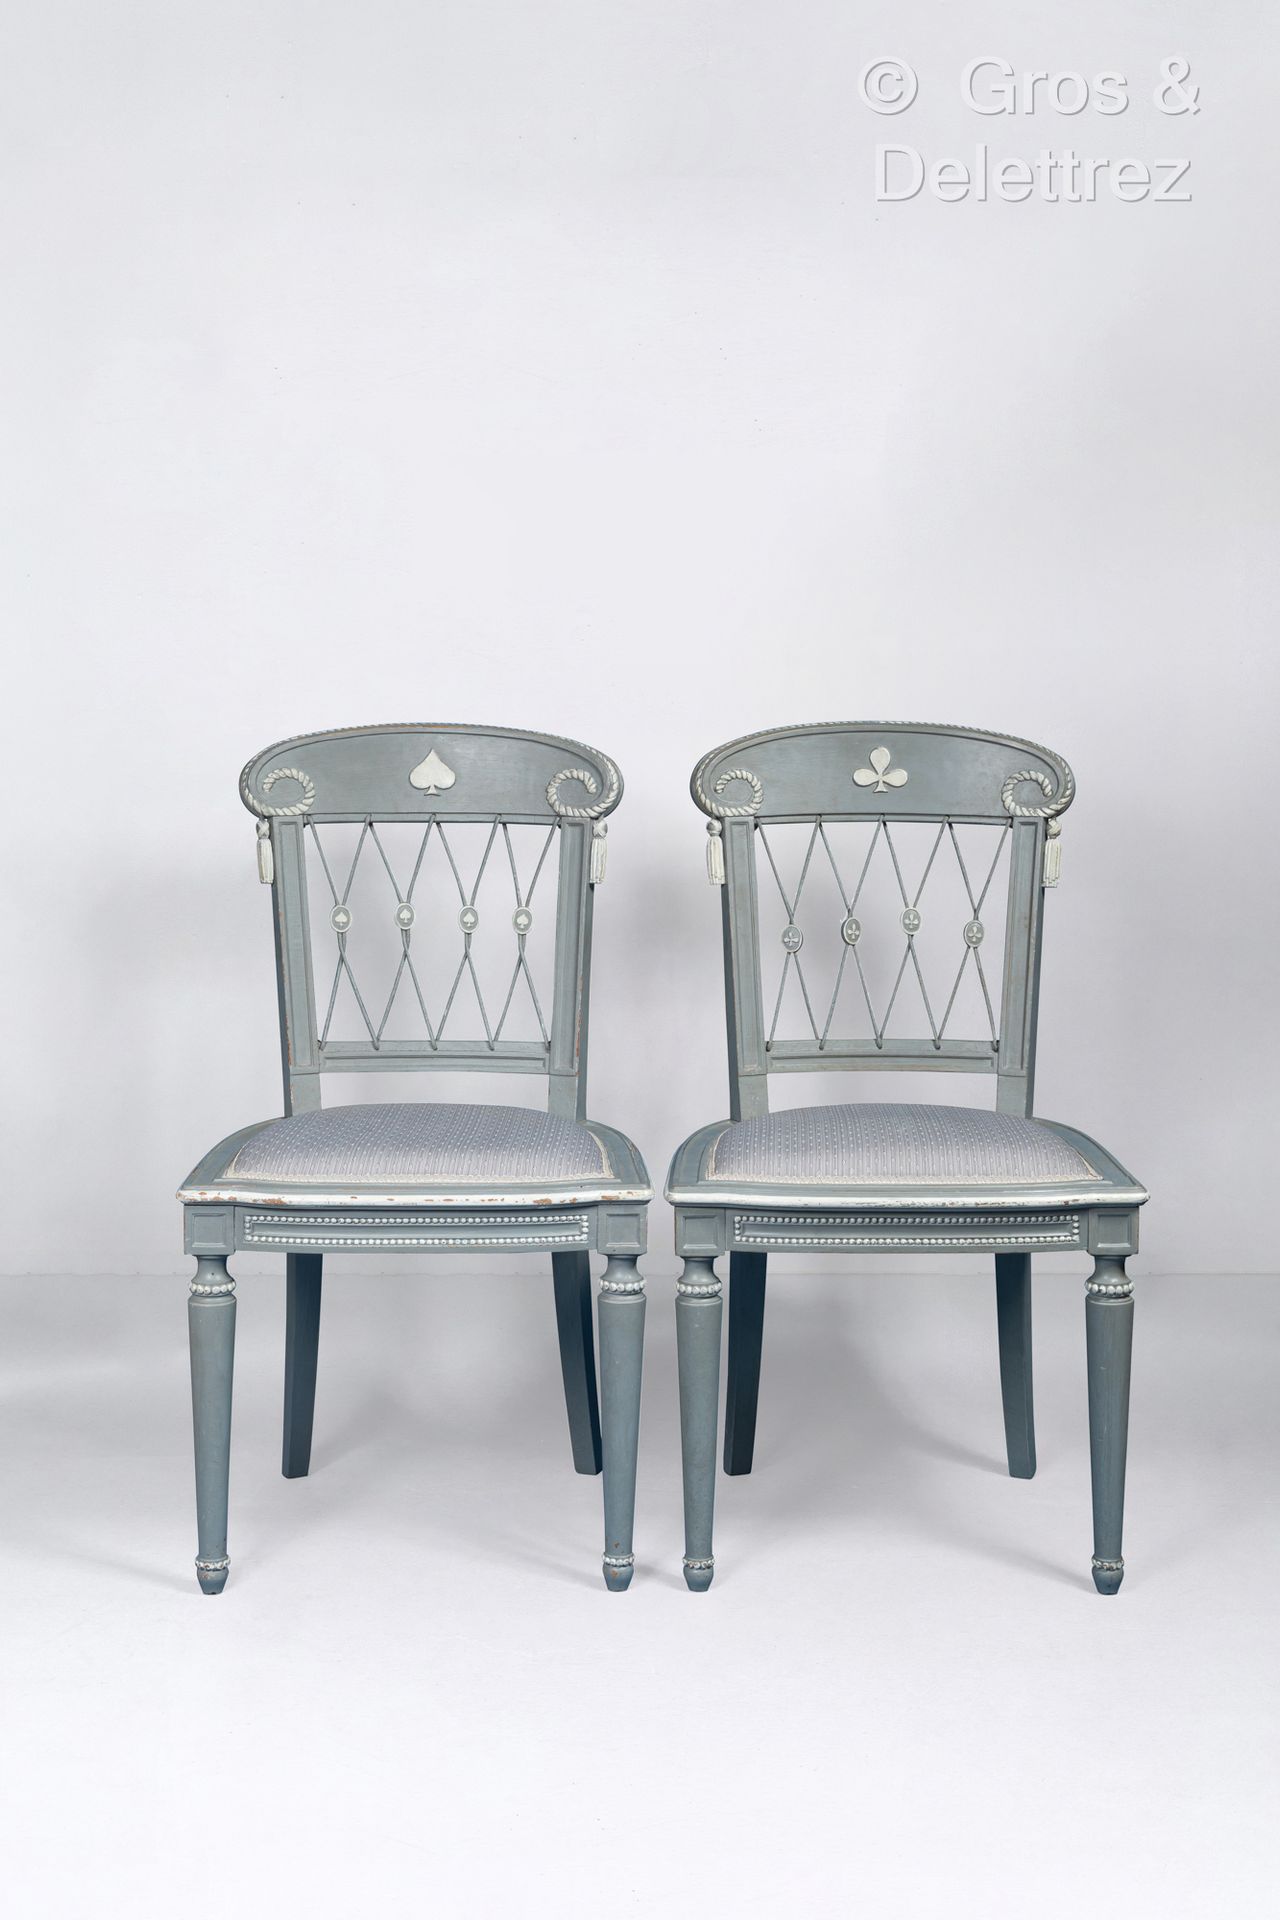 Null 安德烈-格鲁特(1884-1967)
罕见的四套桥椅，浅灰色和白色漆木，装饰有扑克牌图案。背部有椭圆形的带子，上面有彩绘的绳索，在立柱的两侧有凸起的流&hellip;